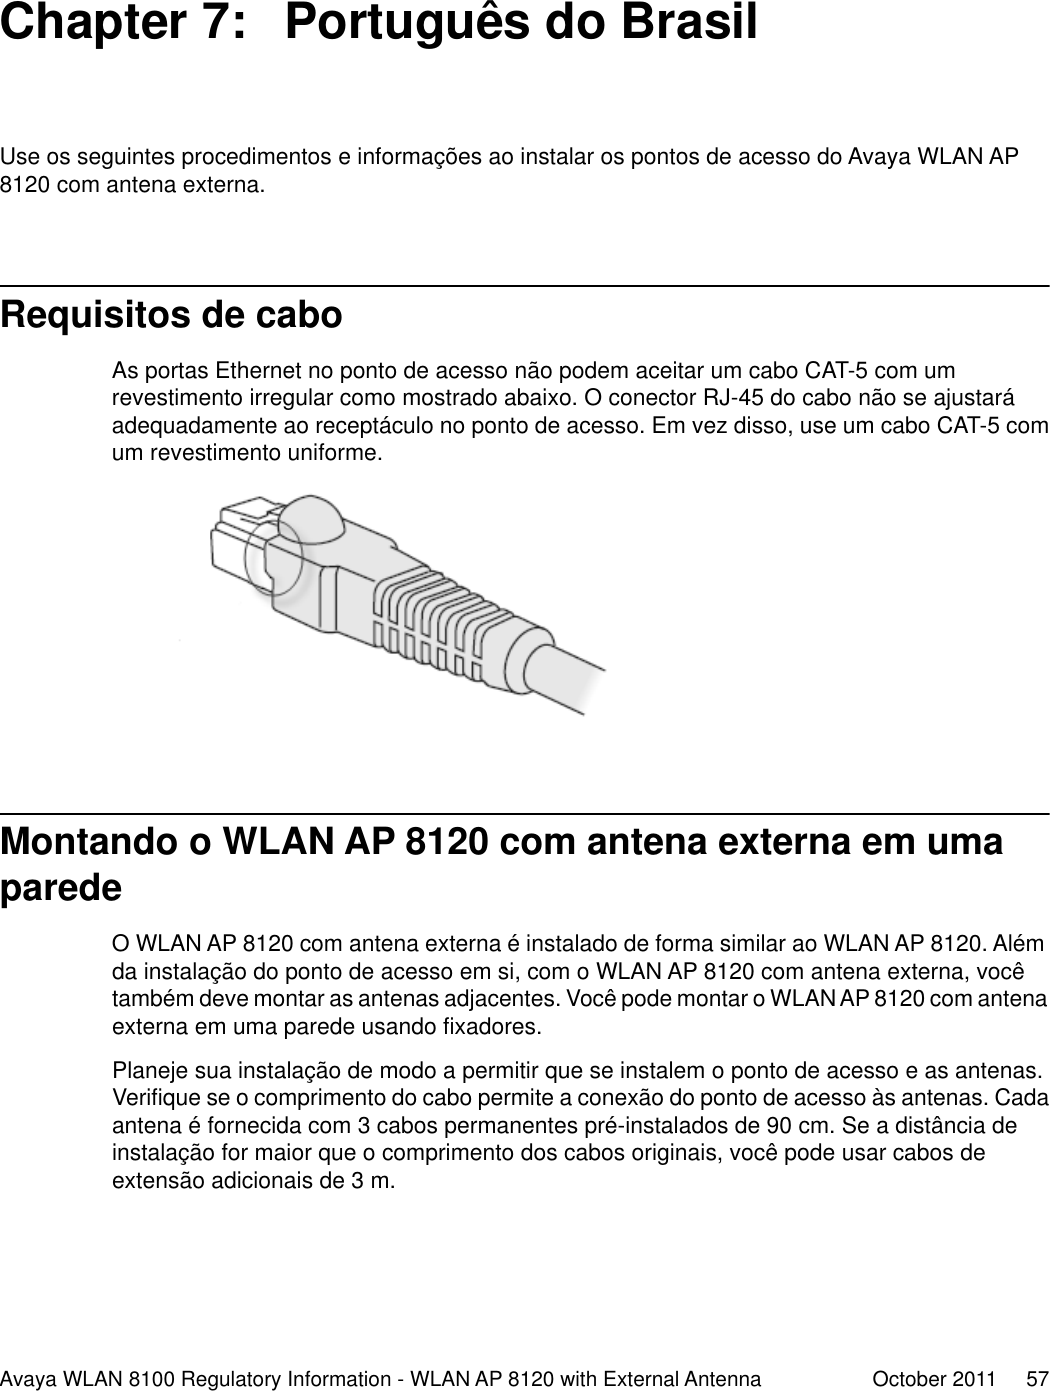 Chapter 7:  Português do BrasilUse os seguintes procedimentos e informações ao instalar os pontos de acesso do Avaya WLAN AP8120 com antena externa.Requisitos de caboAs portas Ethernet no ponto de acesso não podem aceitar um cabo CAT-5 com umrevestimento irregular como mostrado abaixo. O conector RJ-45 do cabo não se ajustaráadequadamente ao receptáculo no ponto de acesso. Em vez disso, use um cabo CAT-5 comum revestimento uniforme.Montando o WLAN AP 8120 com antena externa em umaparedeO WLAN AP 8120 com antena externa é instalado de forma similar ao WLAN AP 8120. Alémda instalação do ponto de acesso em si, com o WLAN AP 8120 com antena externa, vocêtambém deve montar as antenas adjacentes. Você pode montar o WLAN AP 8120 com antenaexterna em uma parede usando fixadores.Planeje sua instalação de modo a permitir que se instalem o ponto de acesso e as antenas.Verifique se o comprimento do cabo permite a conexão do ponto de acesso às antenas. Cadaantena é fornecida com 3 cabos permanentes pré-instalados de 90 cm. Se a distância deinstalação for maior que o comprimento dos cabos originais, você pode usar cabos deextensão adicionais de 3 m.Avaya WLAN 8100 Regulatory Information - WLAN AP 8120 with External Antenna October 2011     57